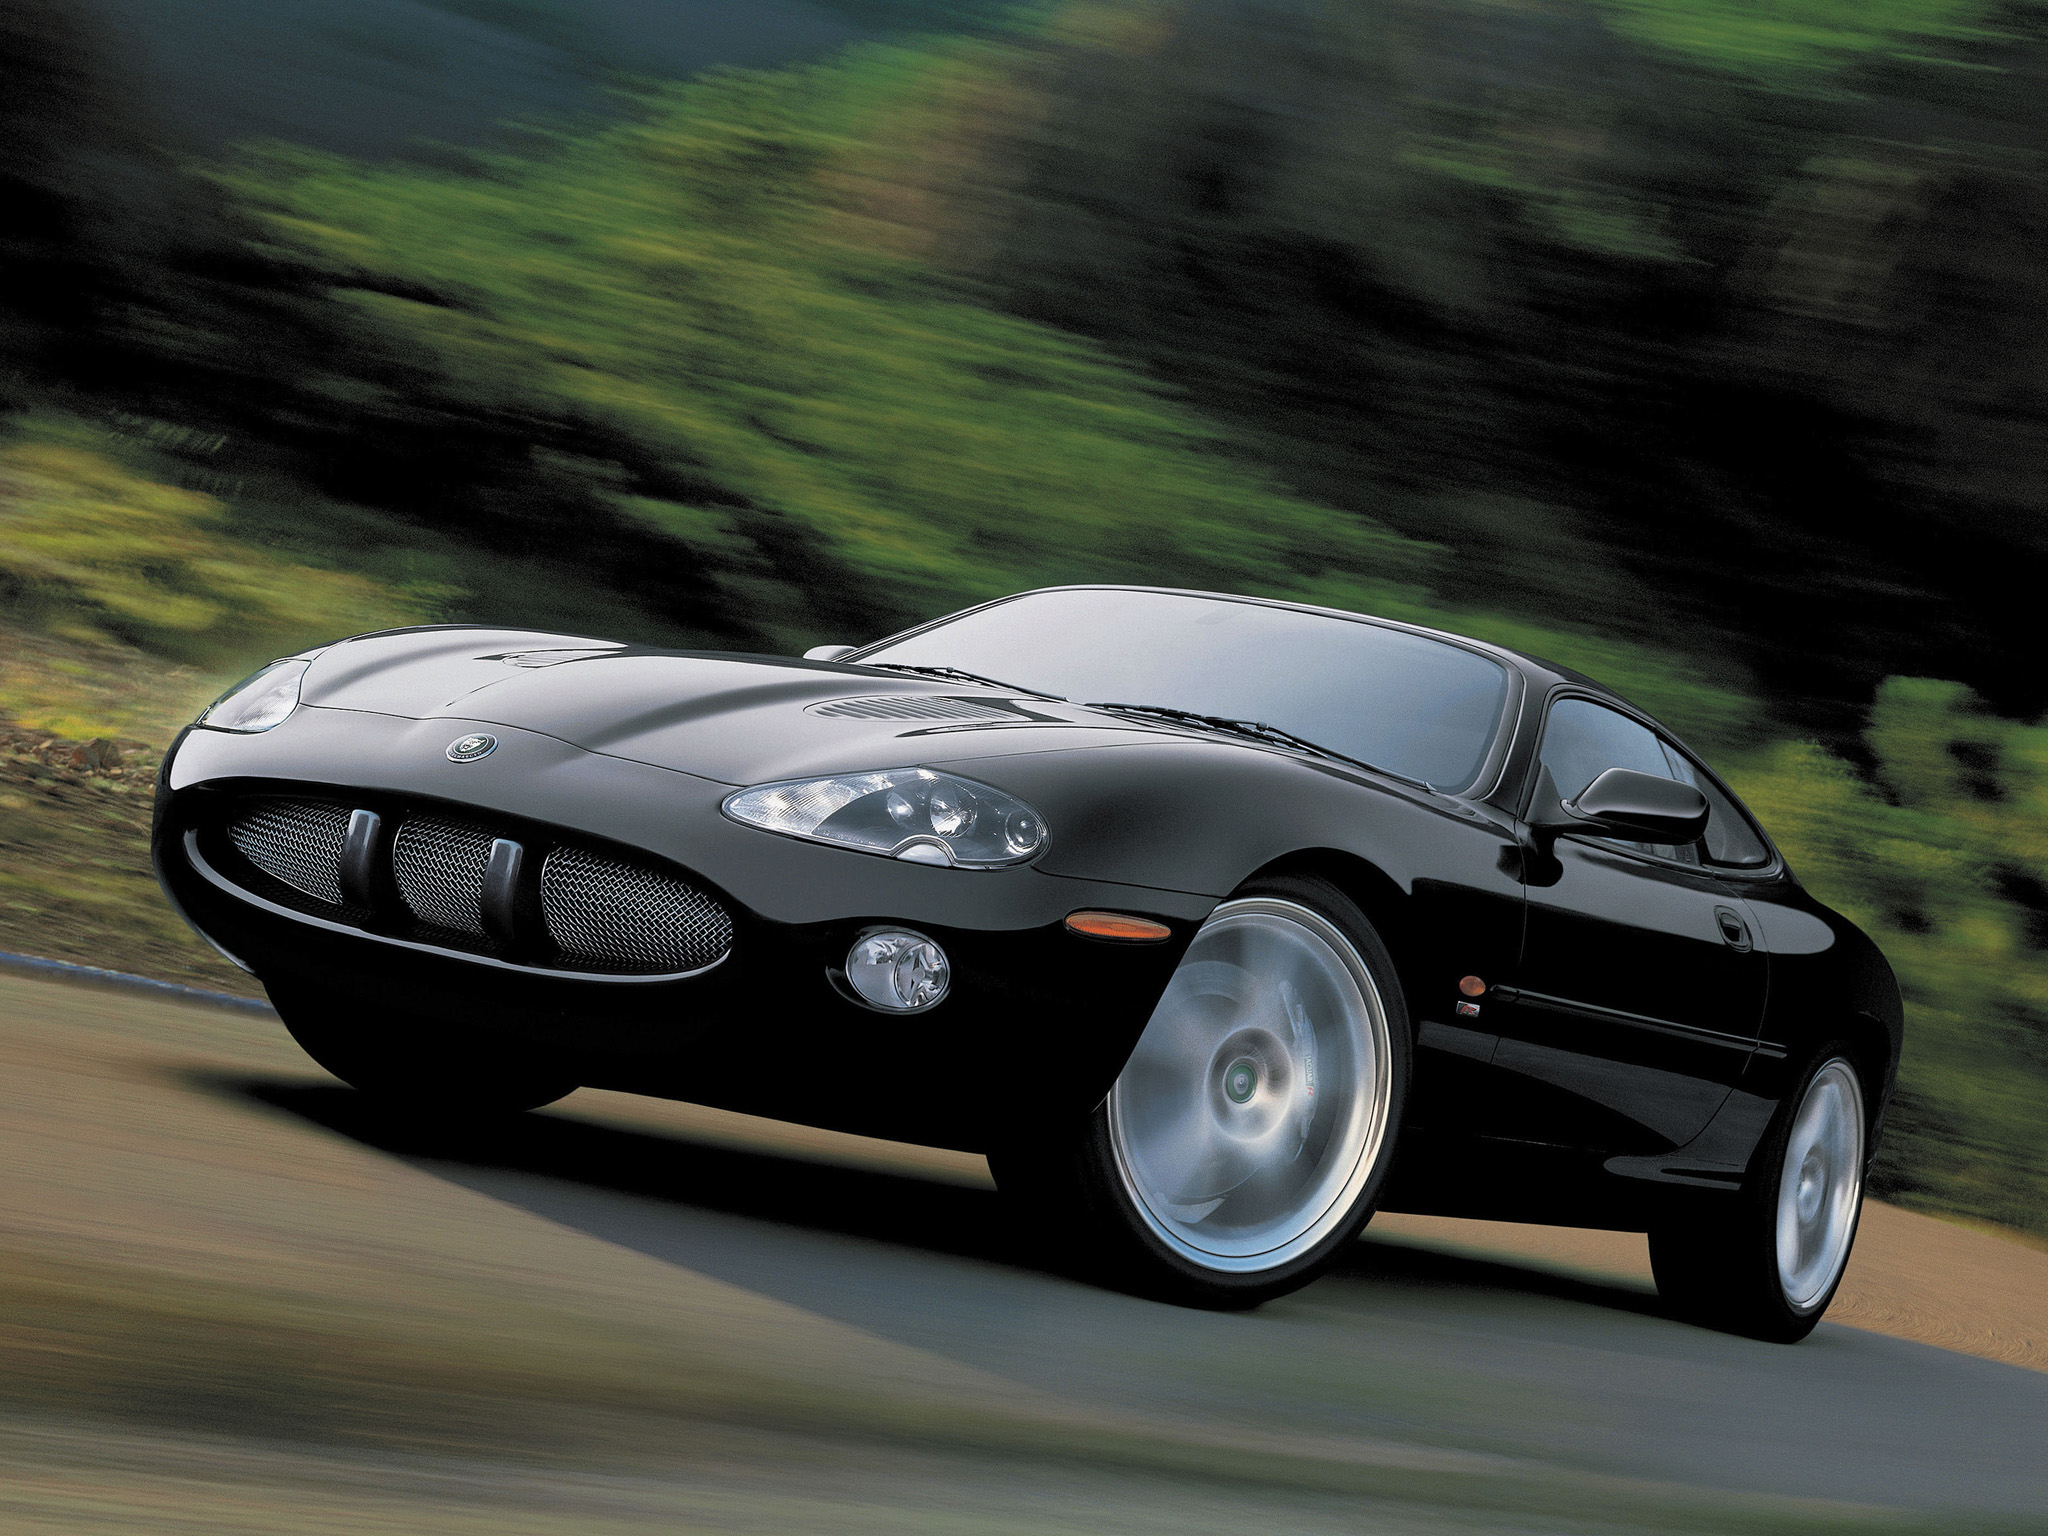  2003 Jaguar XKR Coupe Wallpaper.